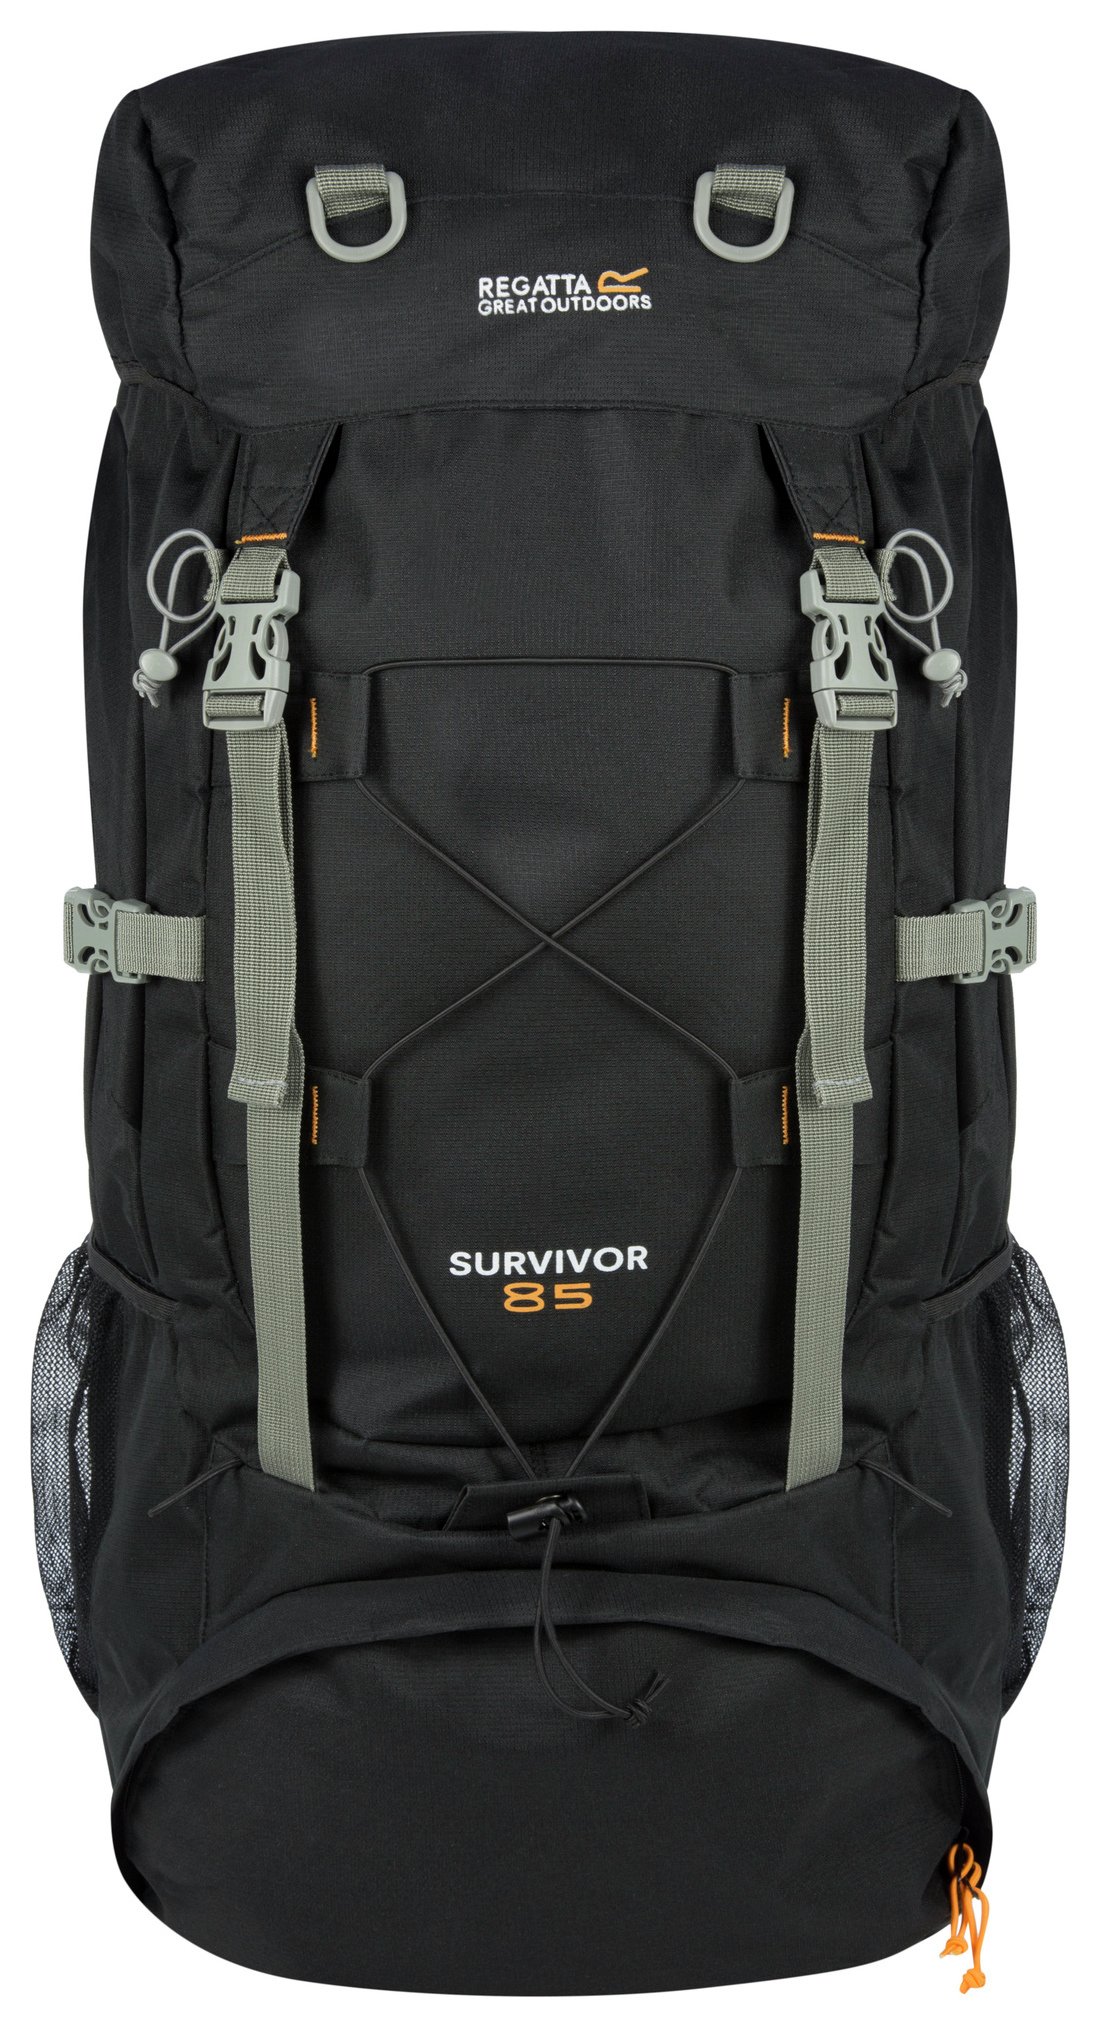 Regatta Survivor III 85L Backpack - Black